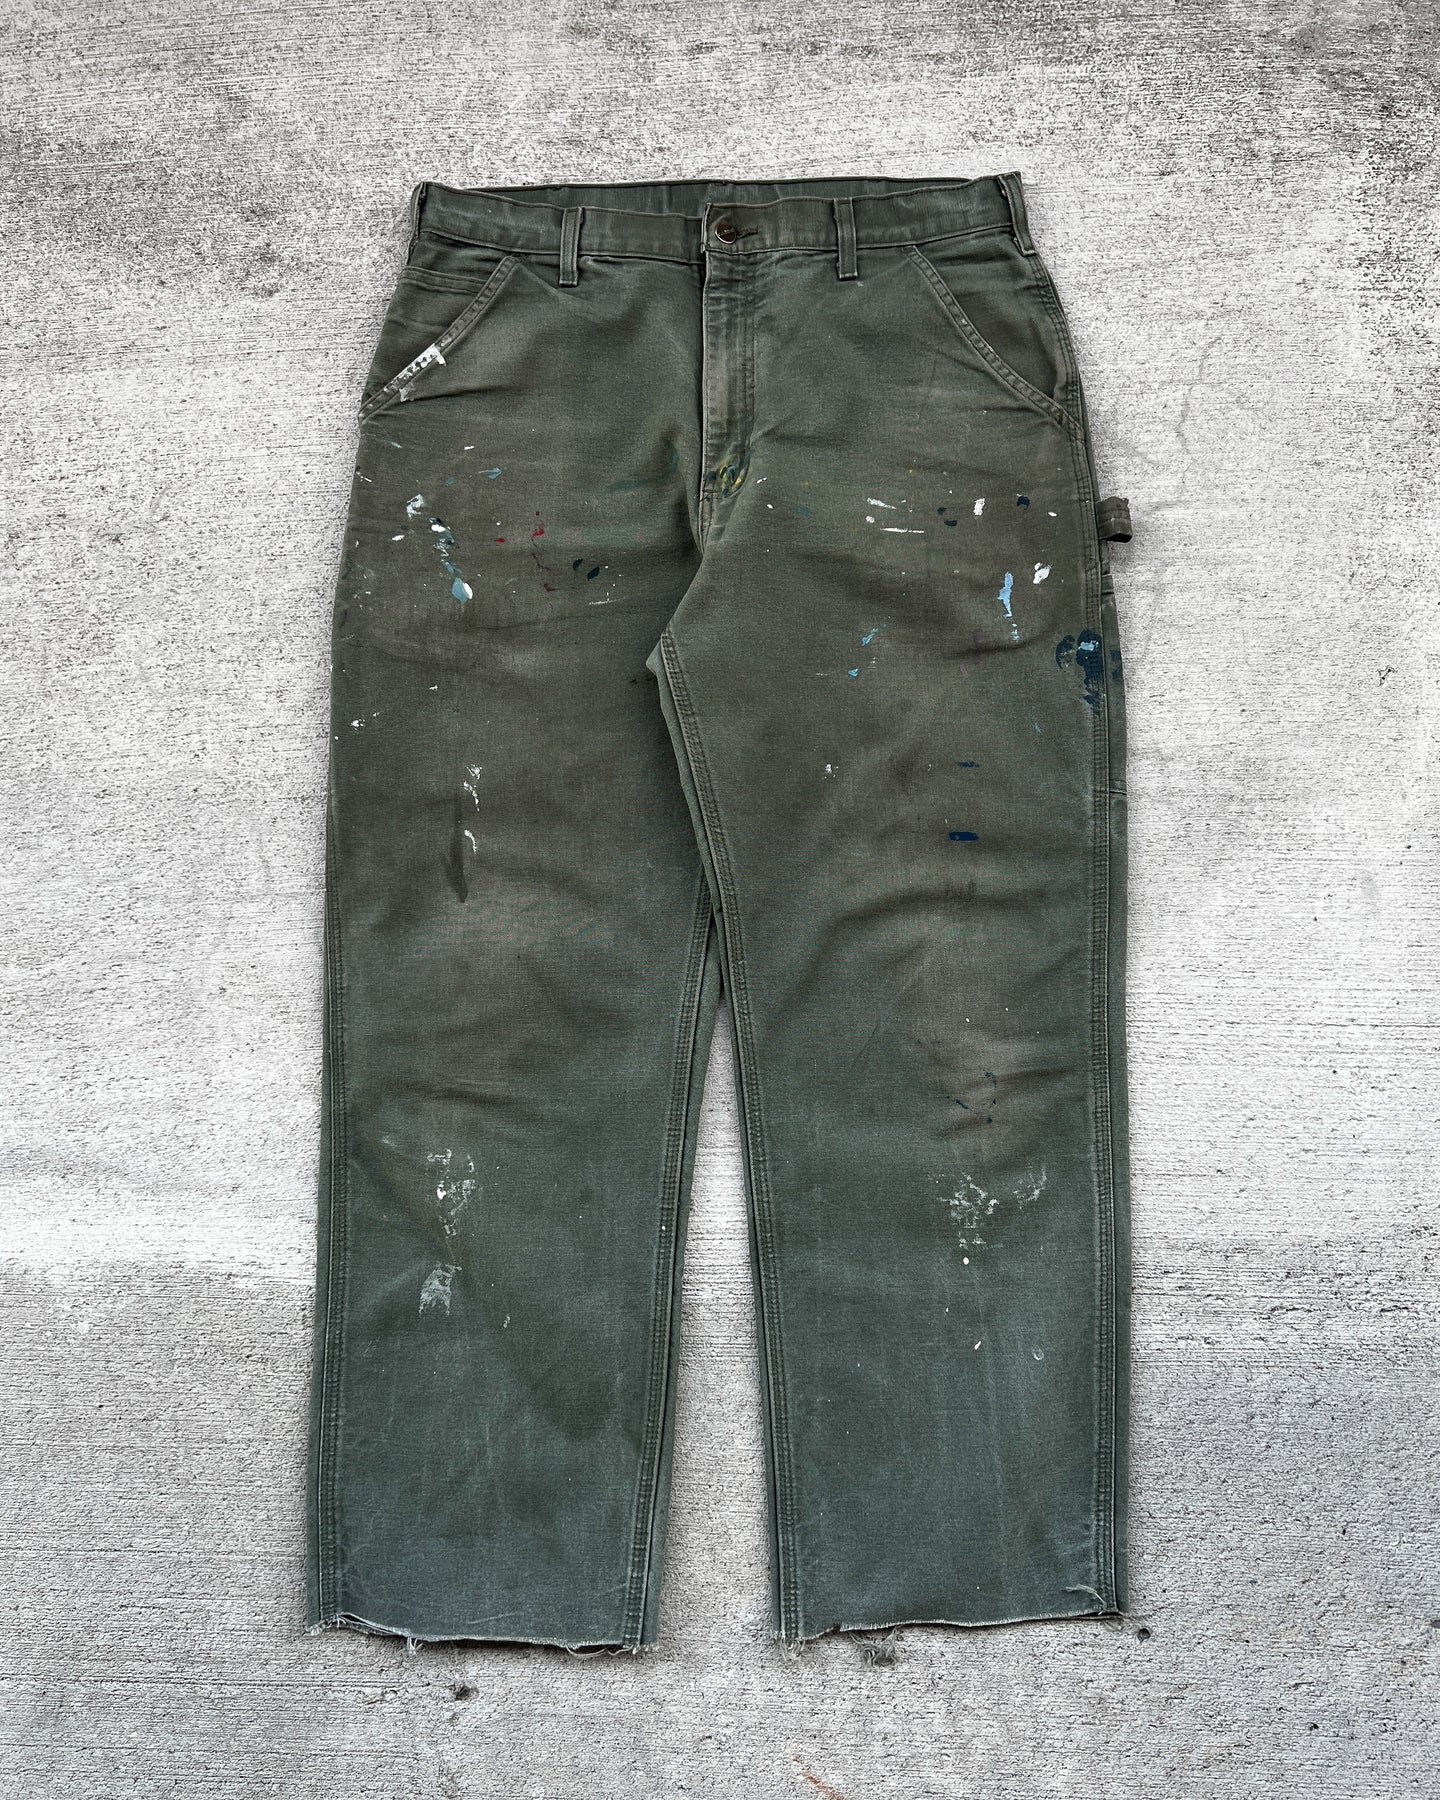 Carhartt Moss Green Painter Carpenter Work Pants - Size 35 x 29